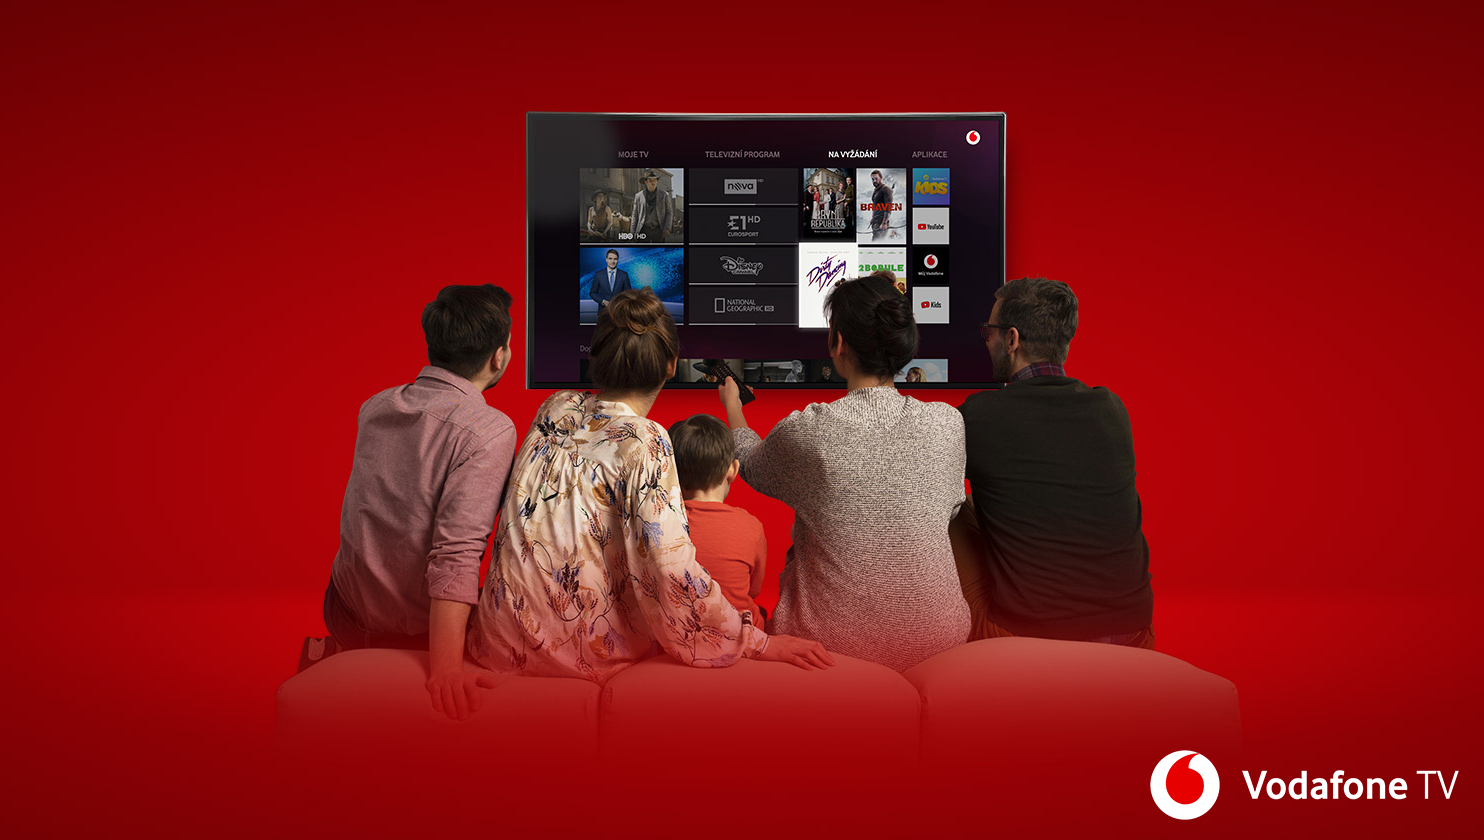 У Vodafone TV тепер можна безкоштовно дивитися фільми, мультфільми, серіали та понад 180 каналів